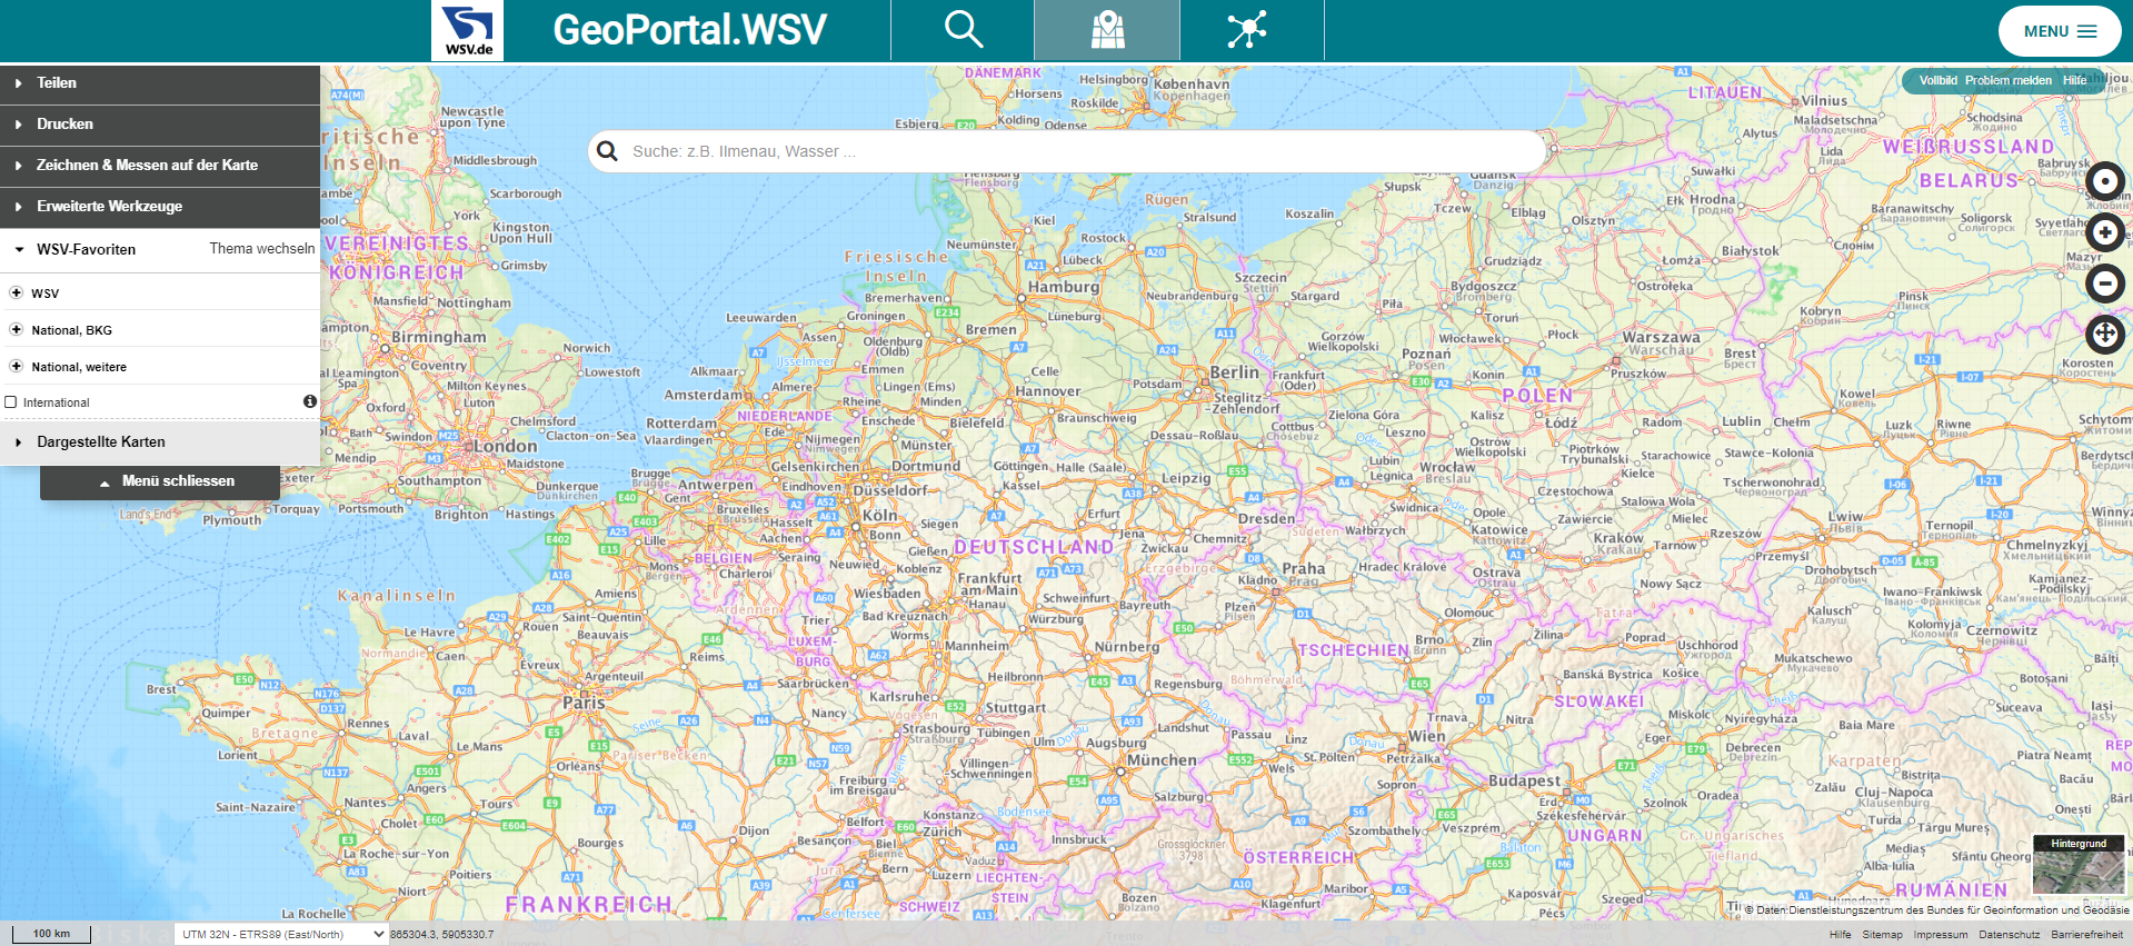 Aktualisiertes Portal-Layout für das GeoPortal.WSV Karte